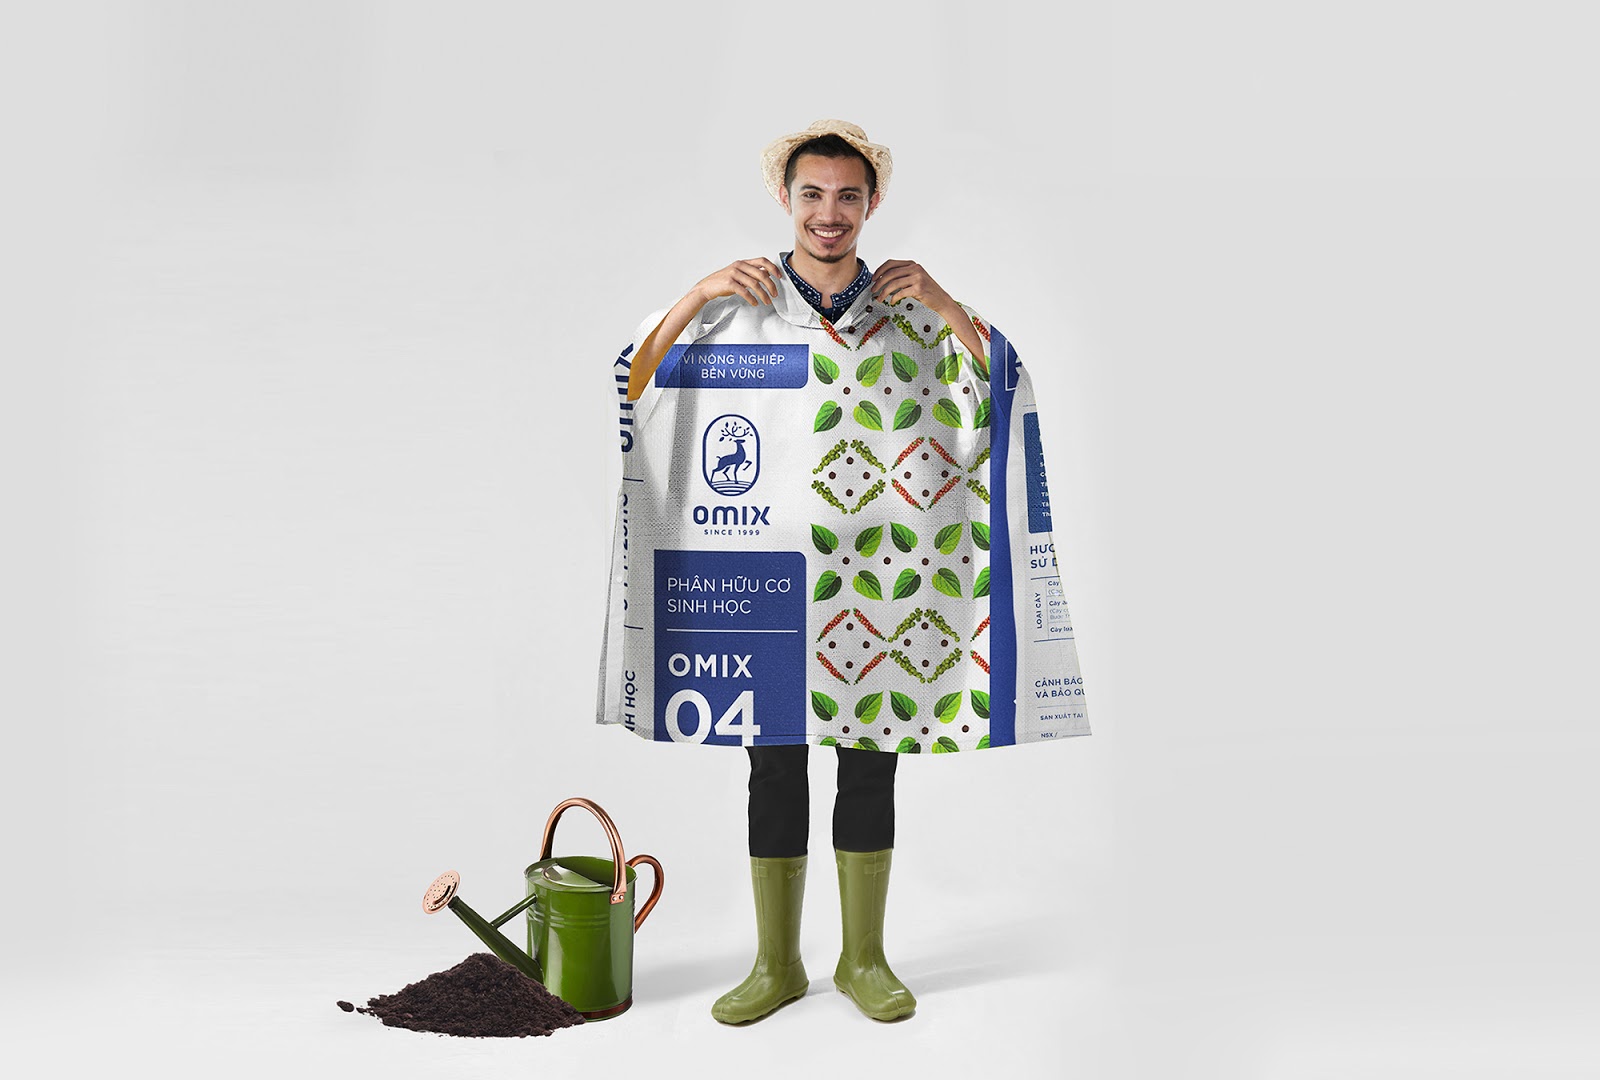 化肥包装品牌策划西安oe欧亿体育app官方下载
品牌包装设计